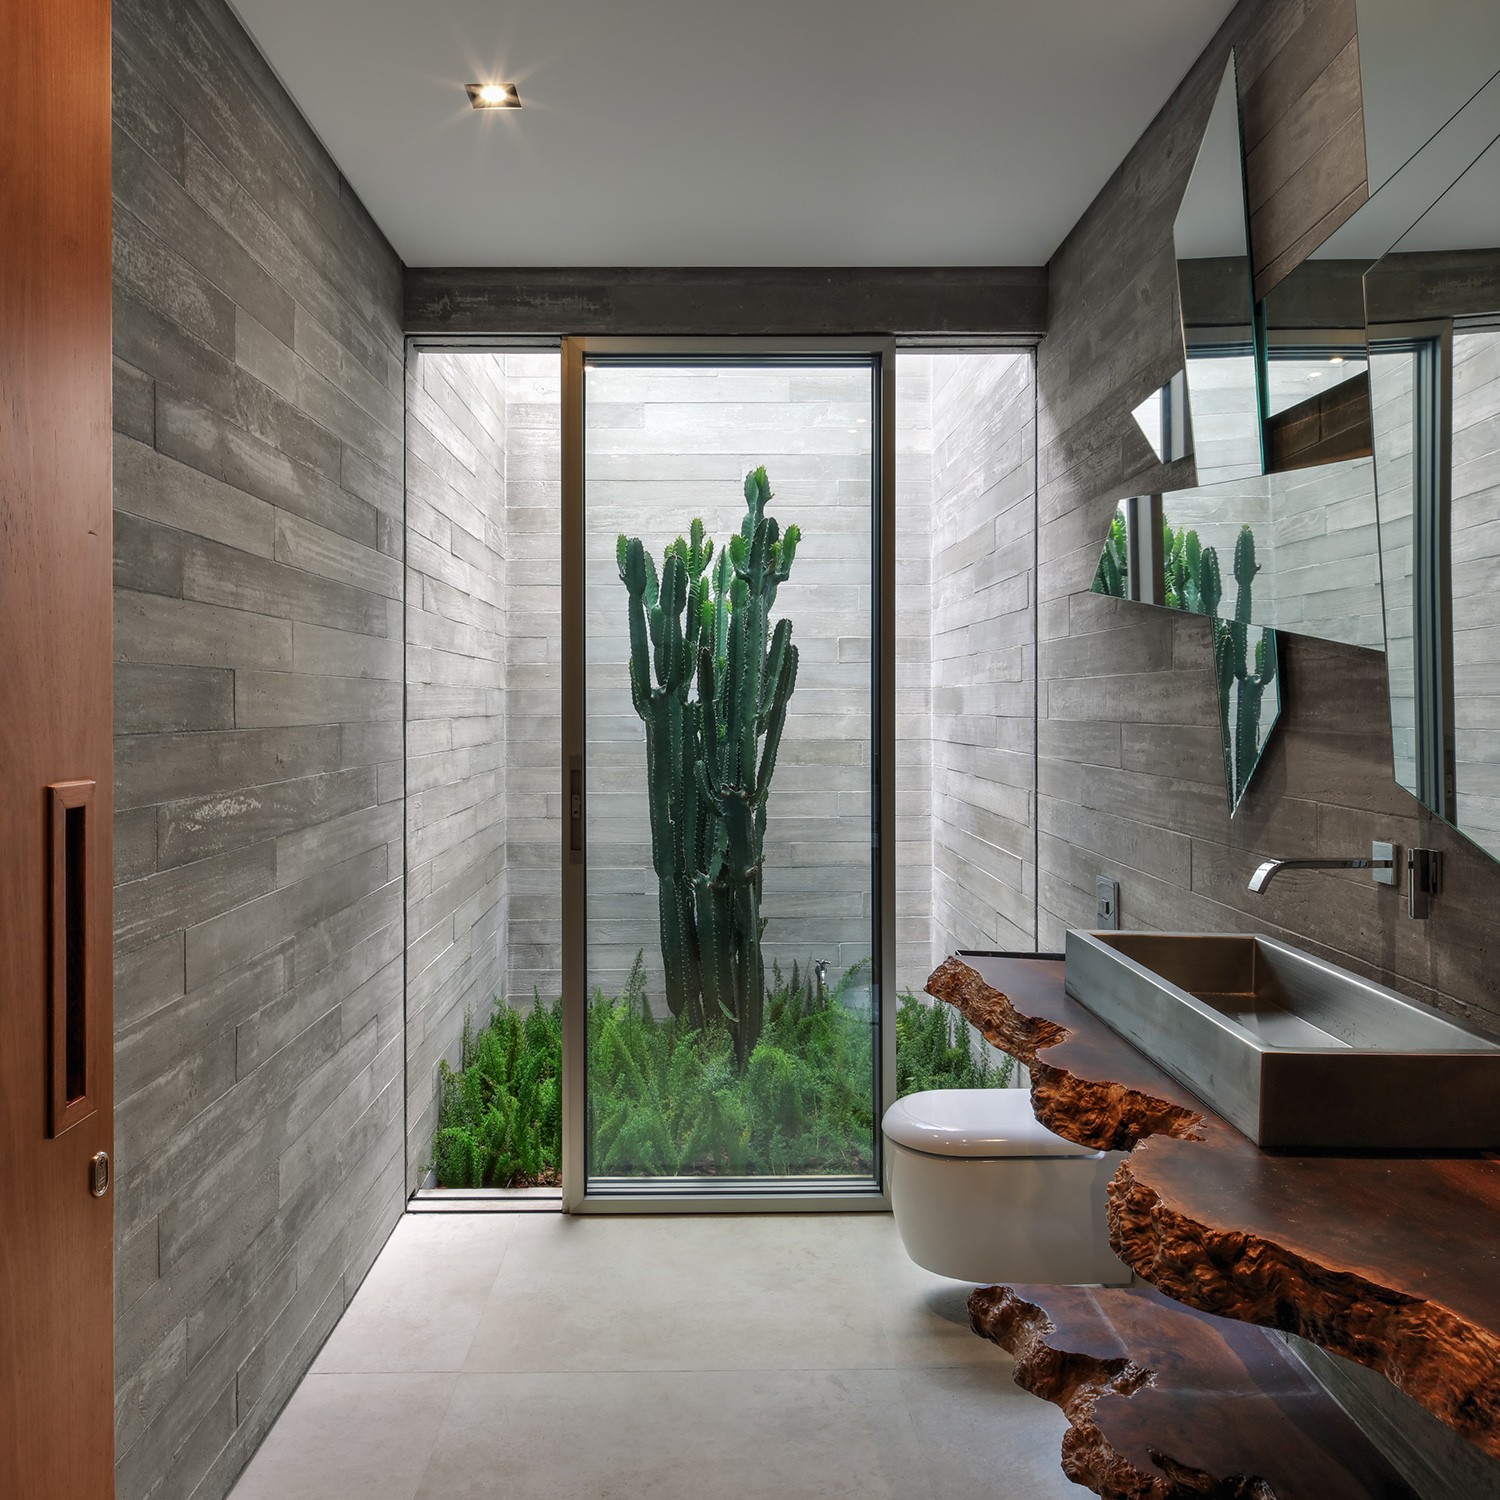 LAVABO | A integração entre os espaços internos e externos está por todo o projeto, inclusive no lavabo que possui um jardim interno (Foto: Nelson Kon / Divulgação)